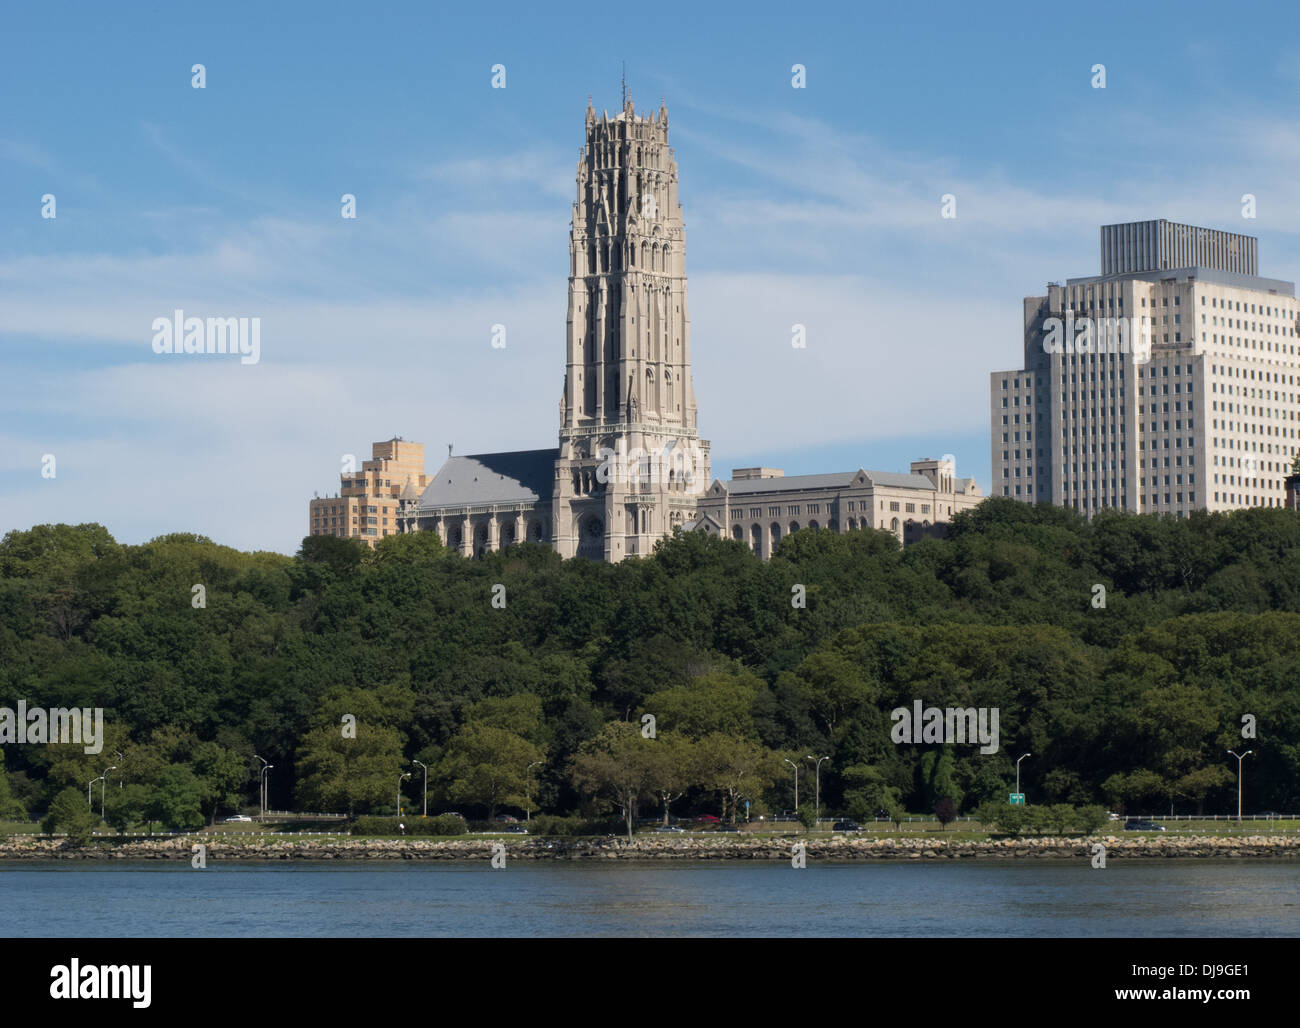 Blick auf die Riverside Church in Manhattan vom Hudson River aus gesehen. Stockfoto